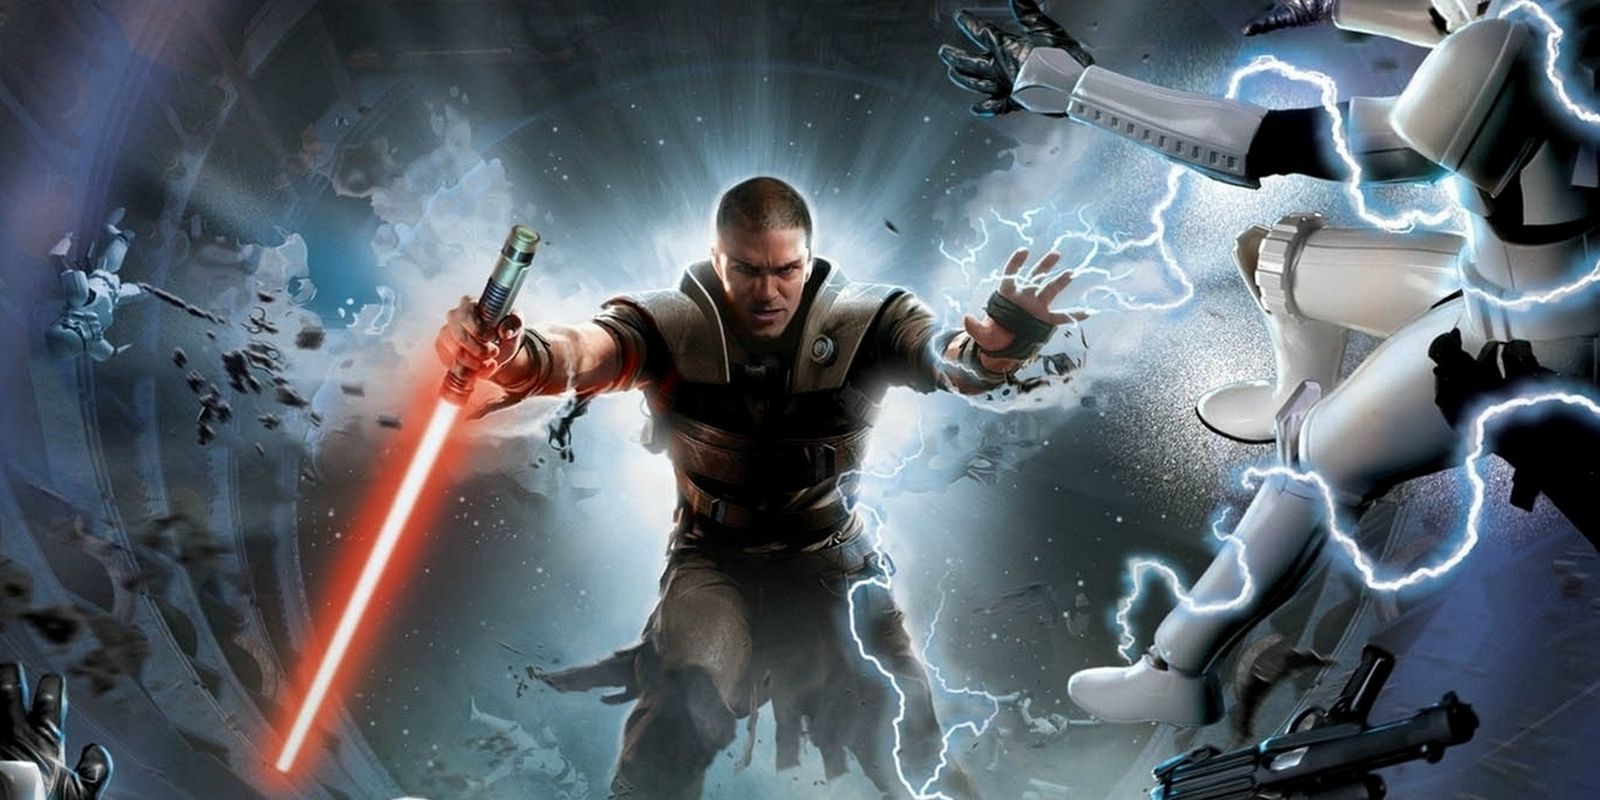 Arte principal de Star Wars: The Force Unleashed mostrando o personagem principal Starkiller segurando um sabre de luz vermelho e enviando Stormtroopers voando e cobertos de raios com a Força.